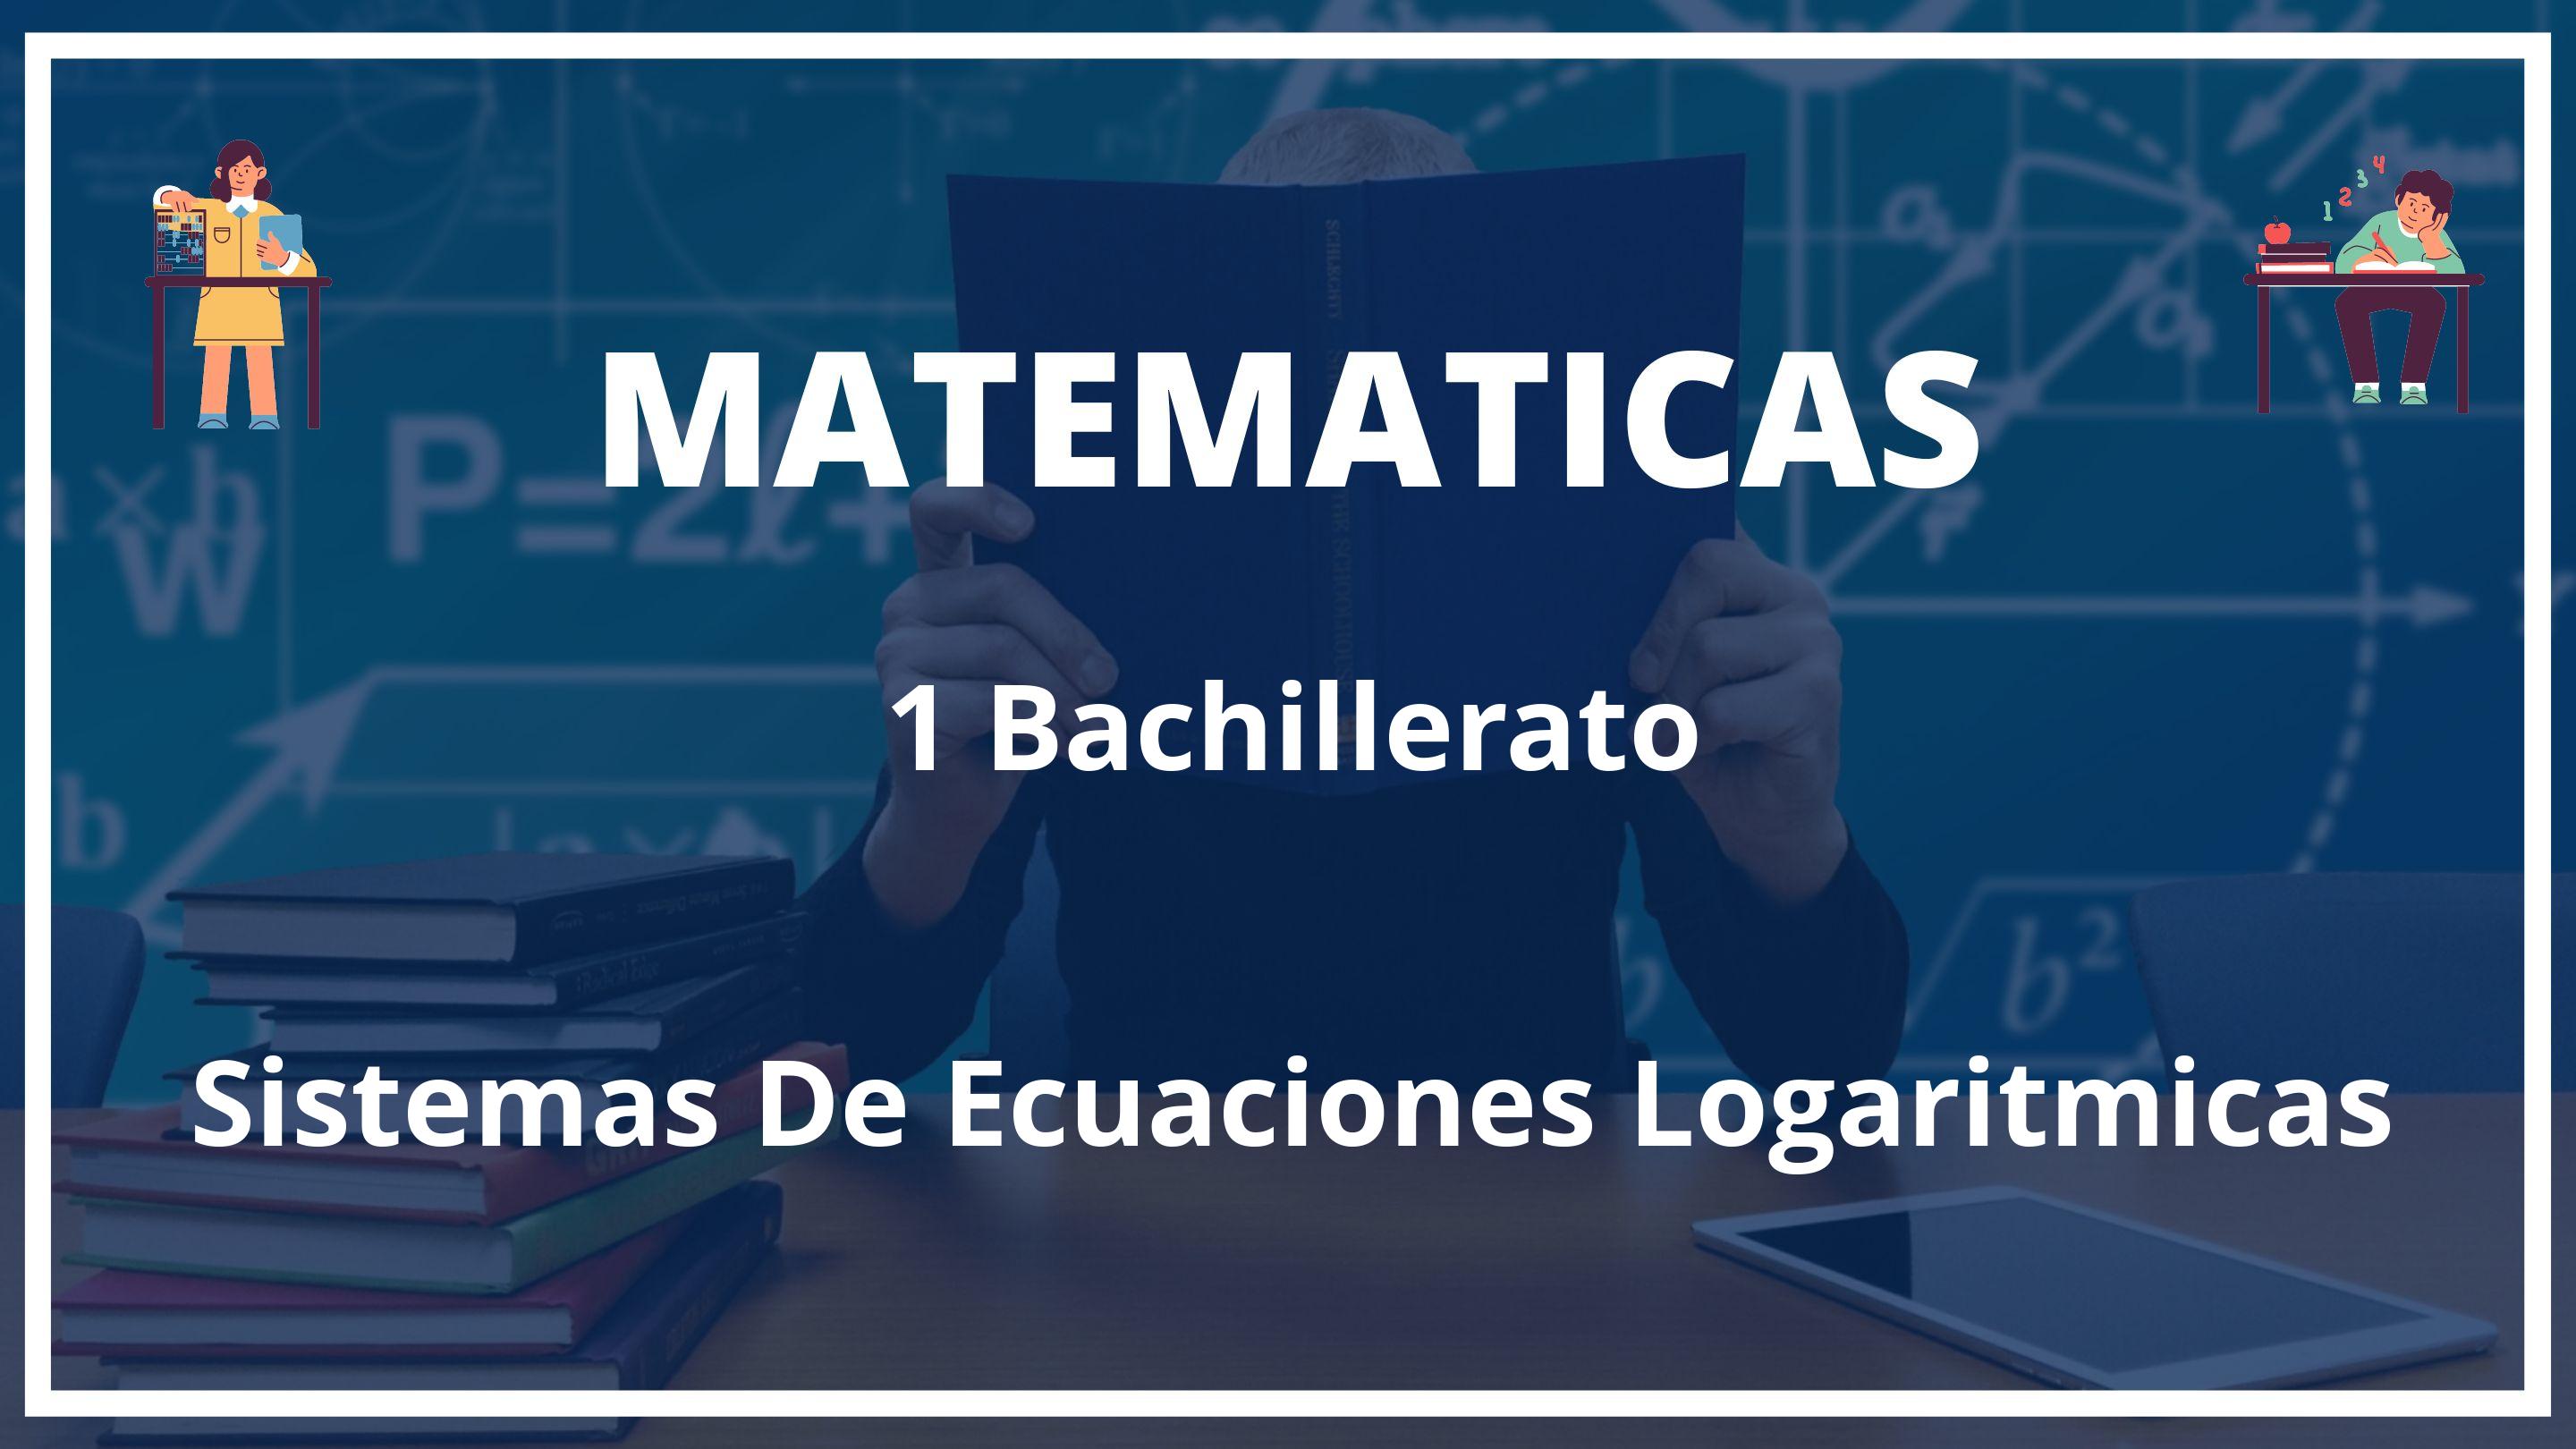 Sistemas De Ecuaciones Logaritmicas 1 Bachillerato